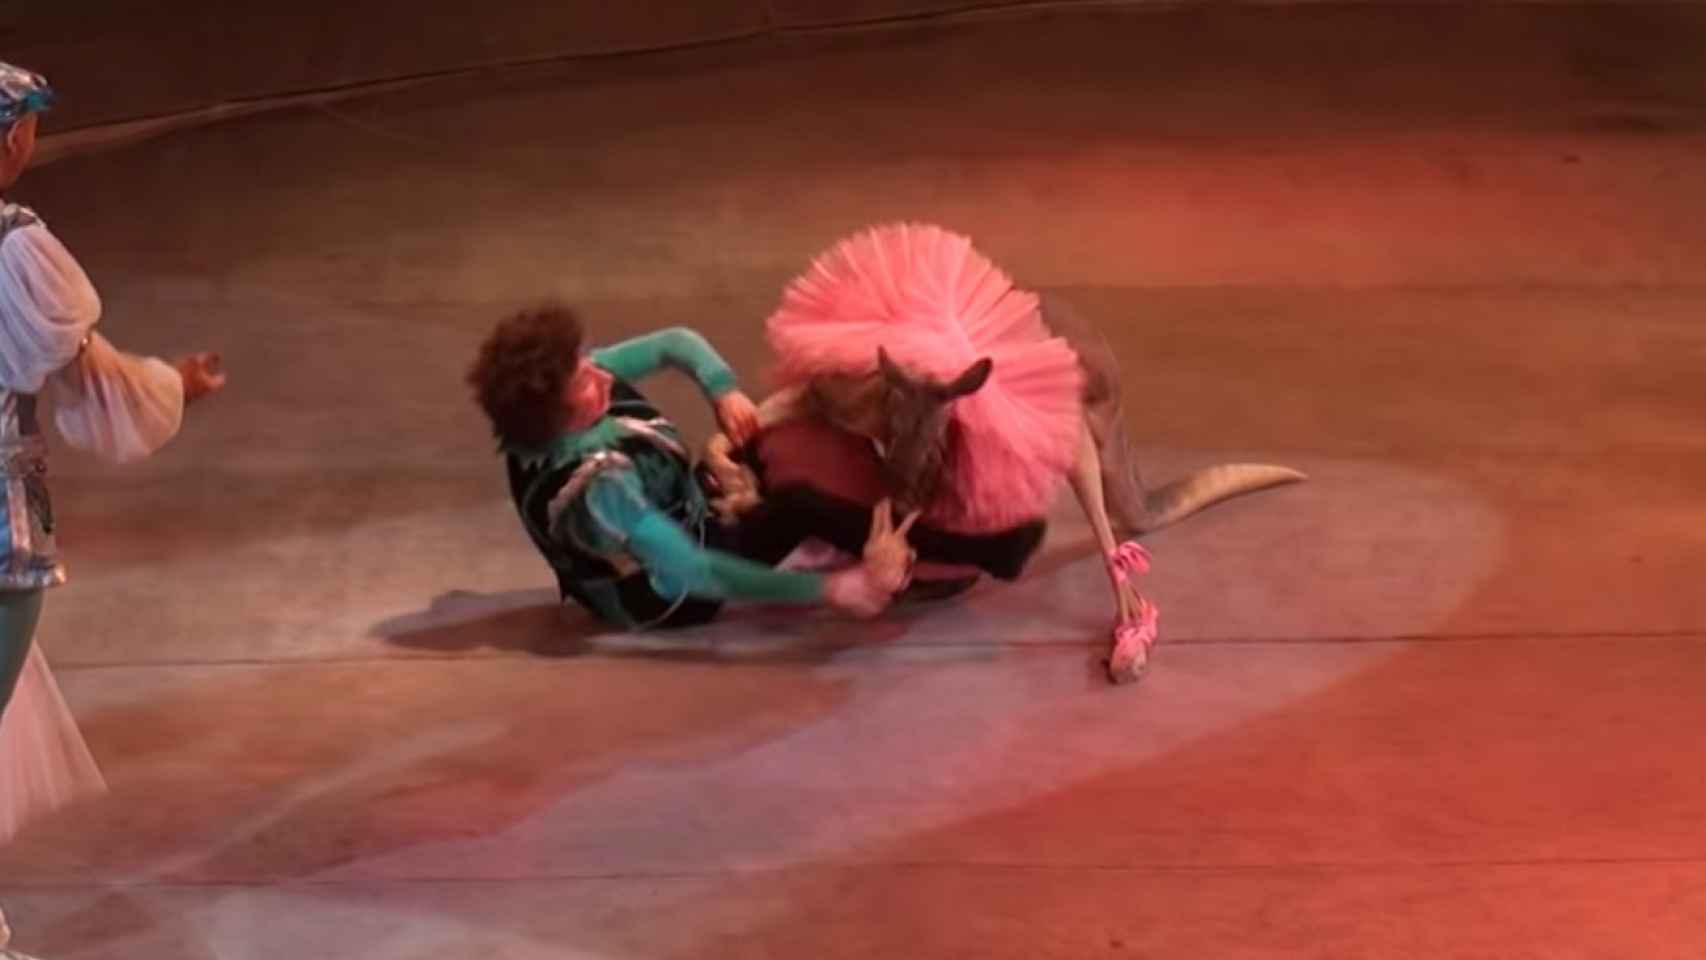 El canguro y el actor, revolcándose por los suelos durante su actuación / YOUTUBE